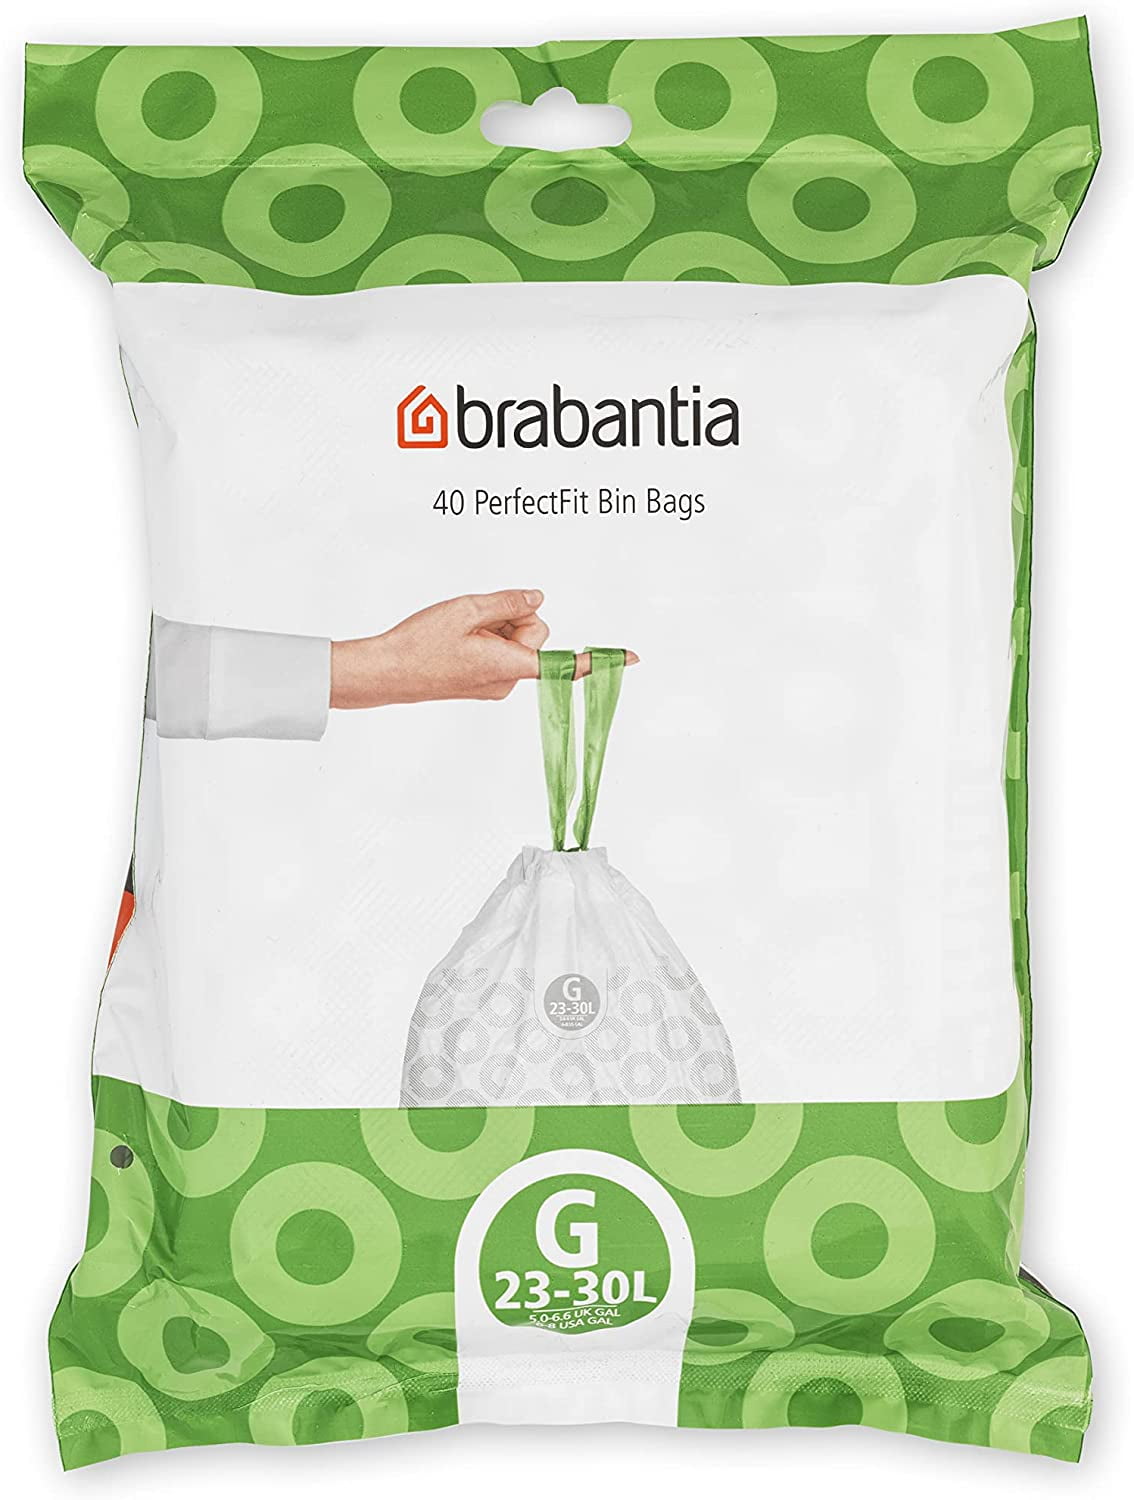 5 Litre Brabantia Brabantia Bin Liner Code W 40 Bag Dispenser Tie Tape Handles 